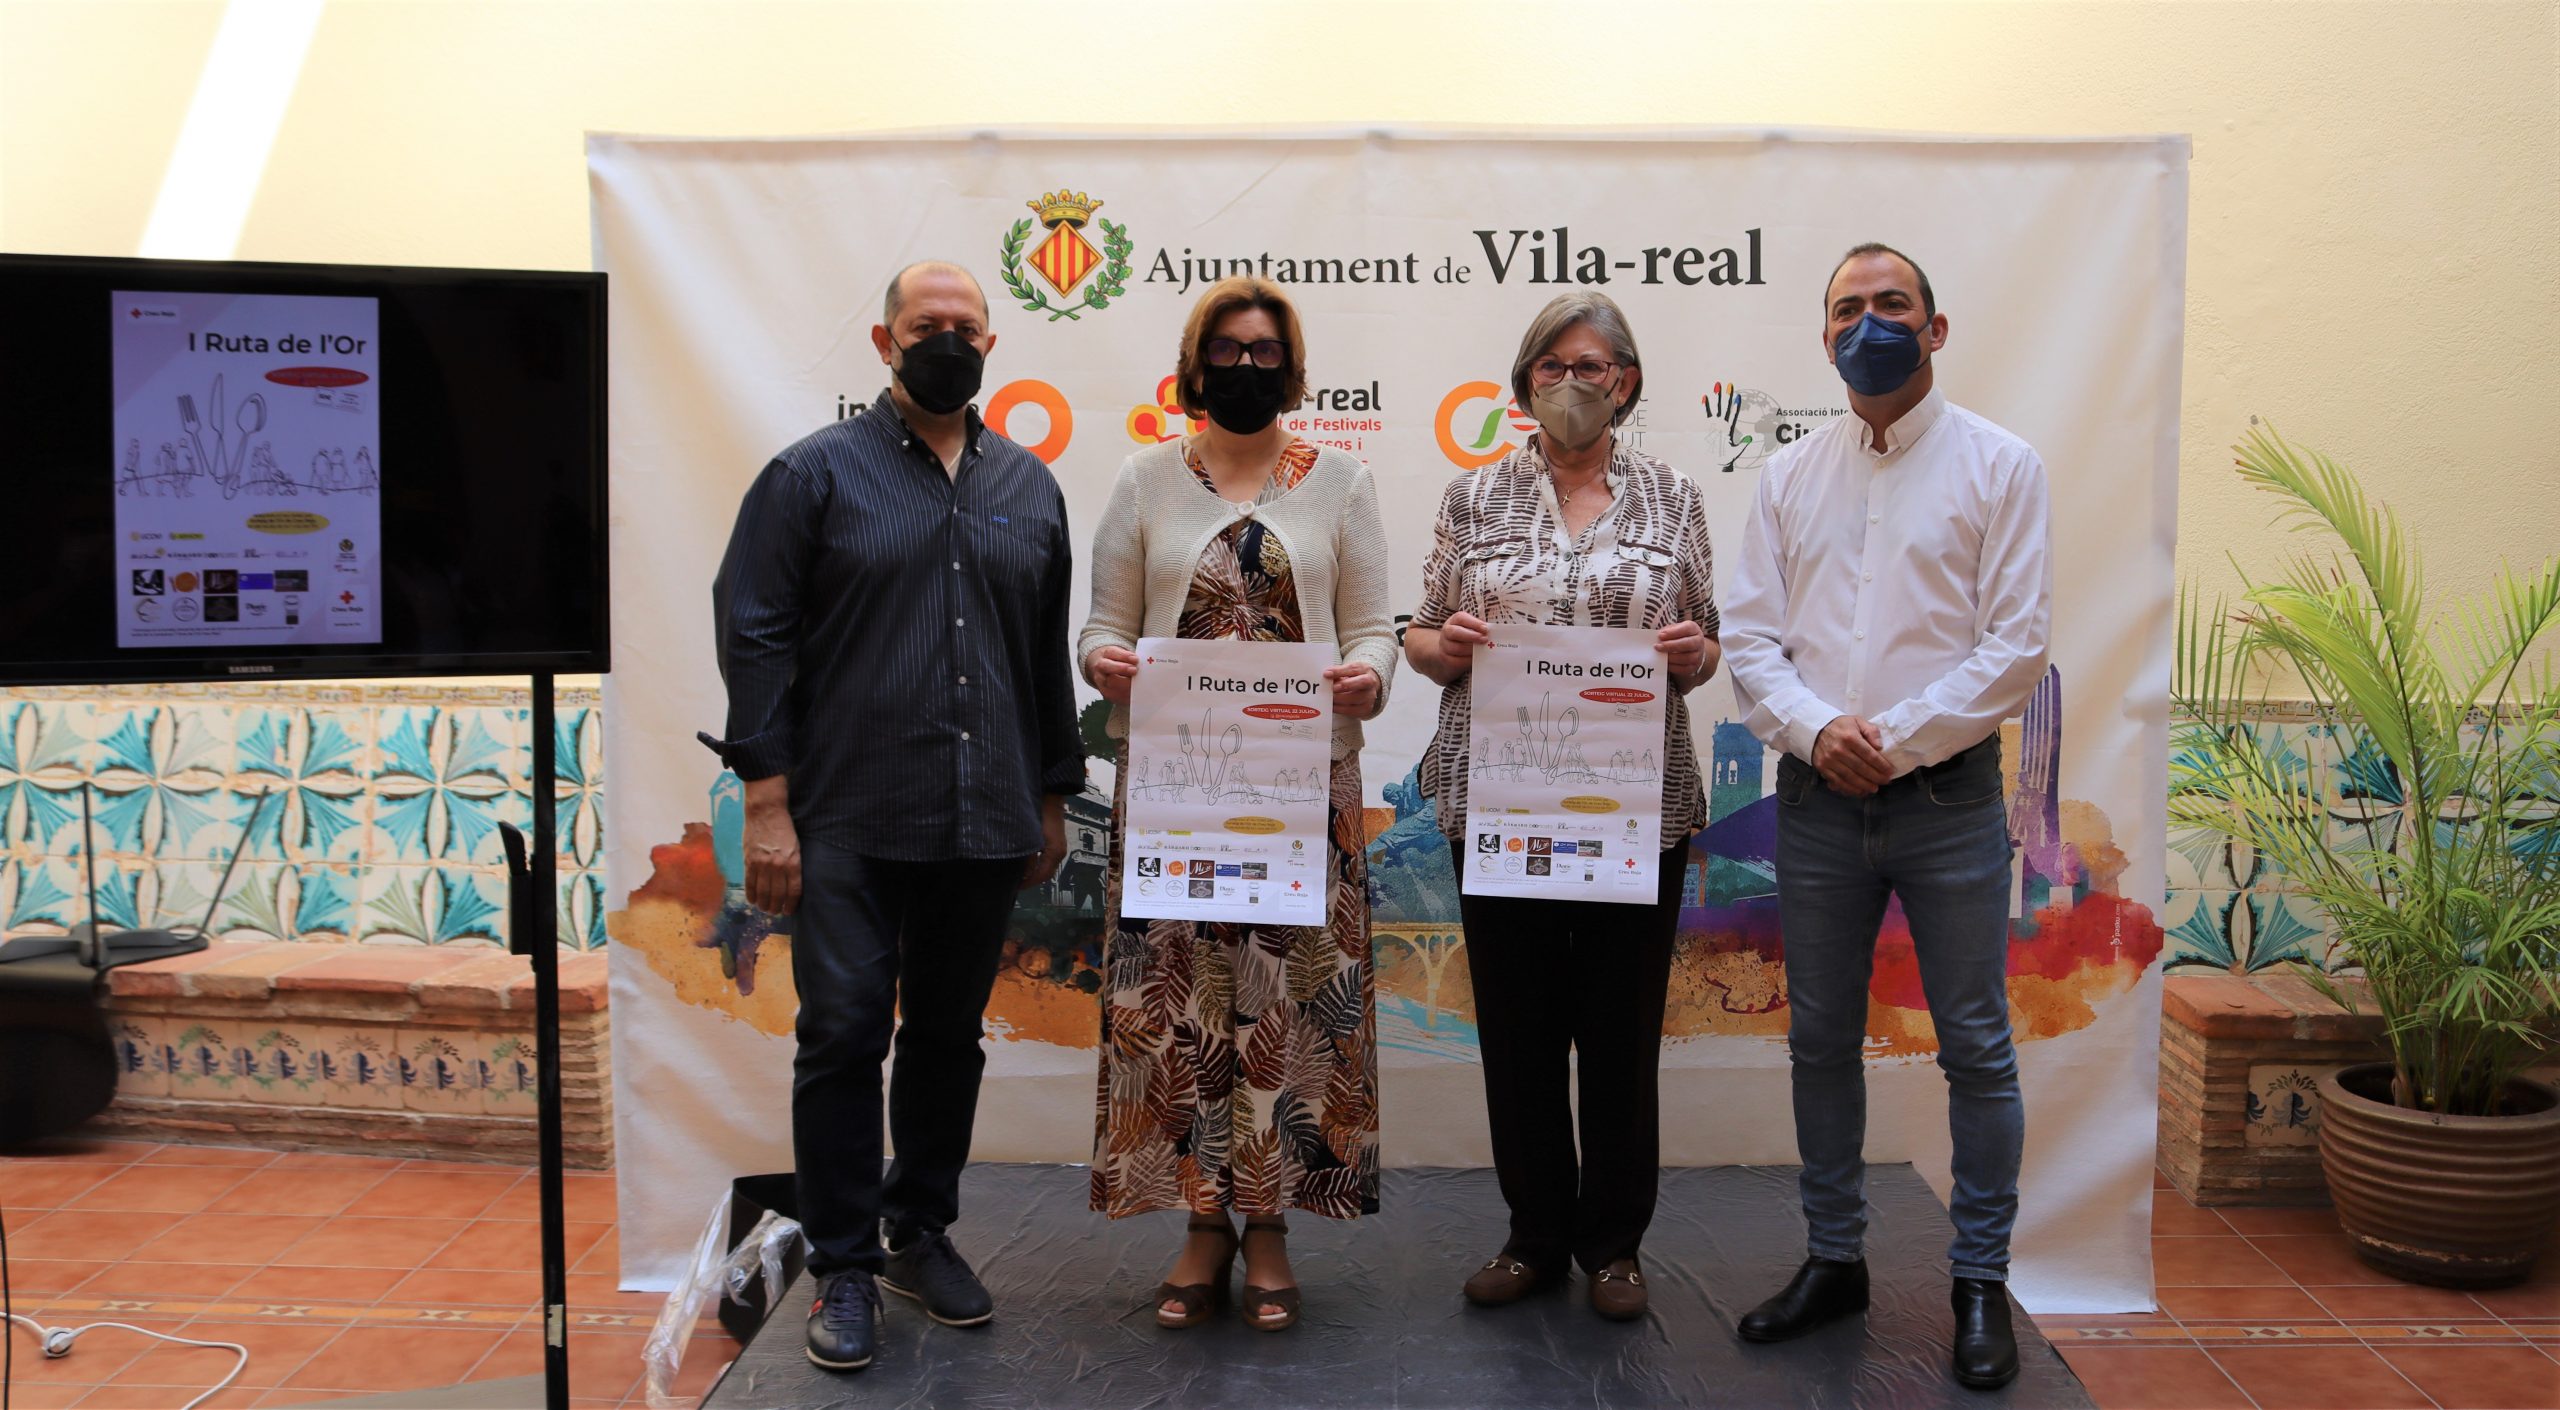 Cruz Roja Vila-real implica a comercios y hostelería de la ciudad en su labor solidaria con la I Ruta del Oro